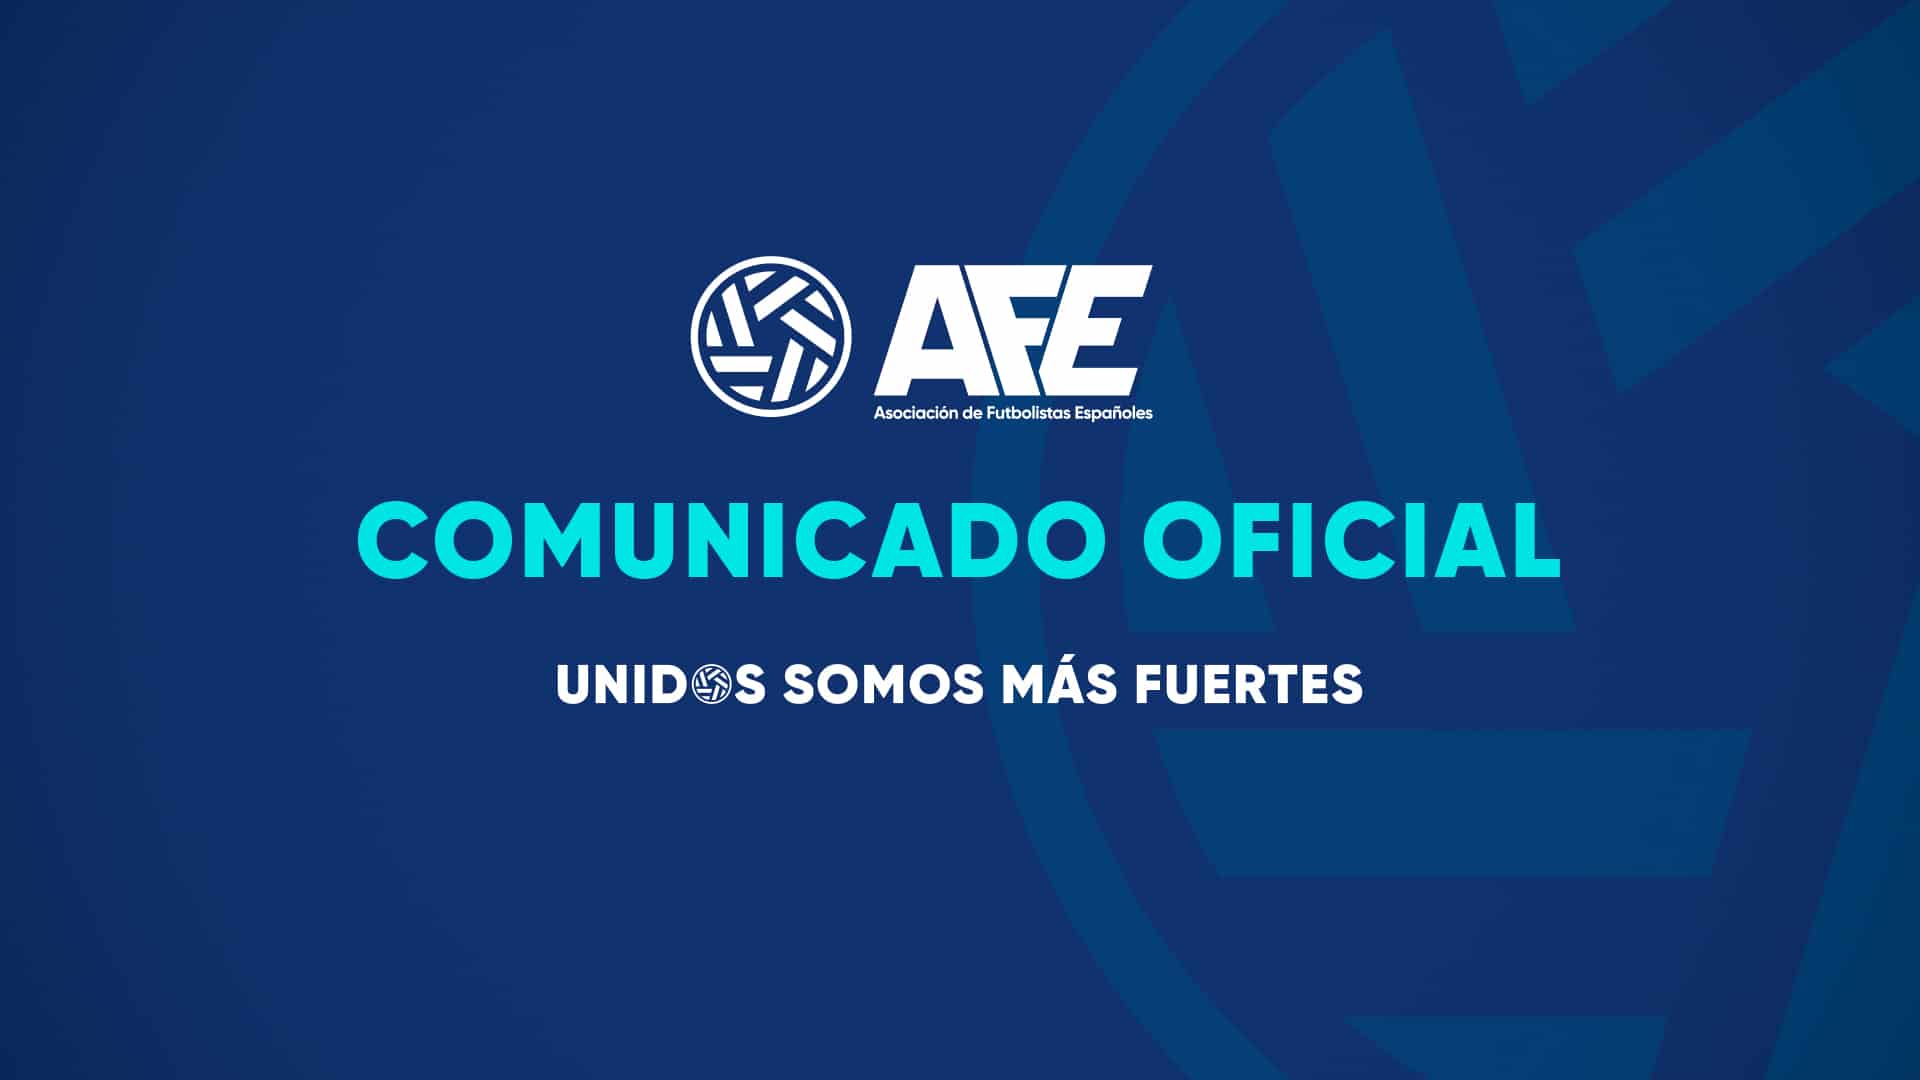 Comunicado oficial AFE